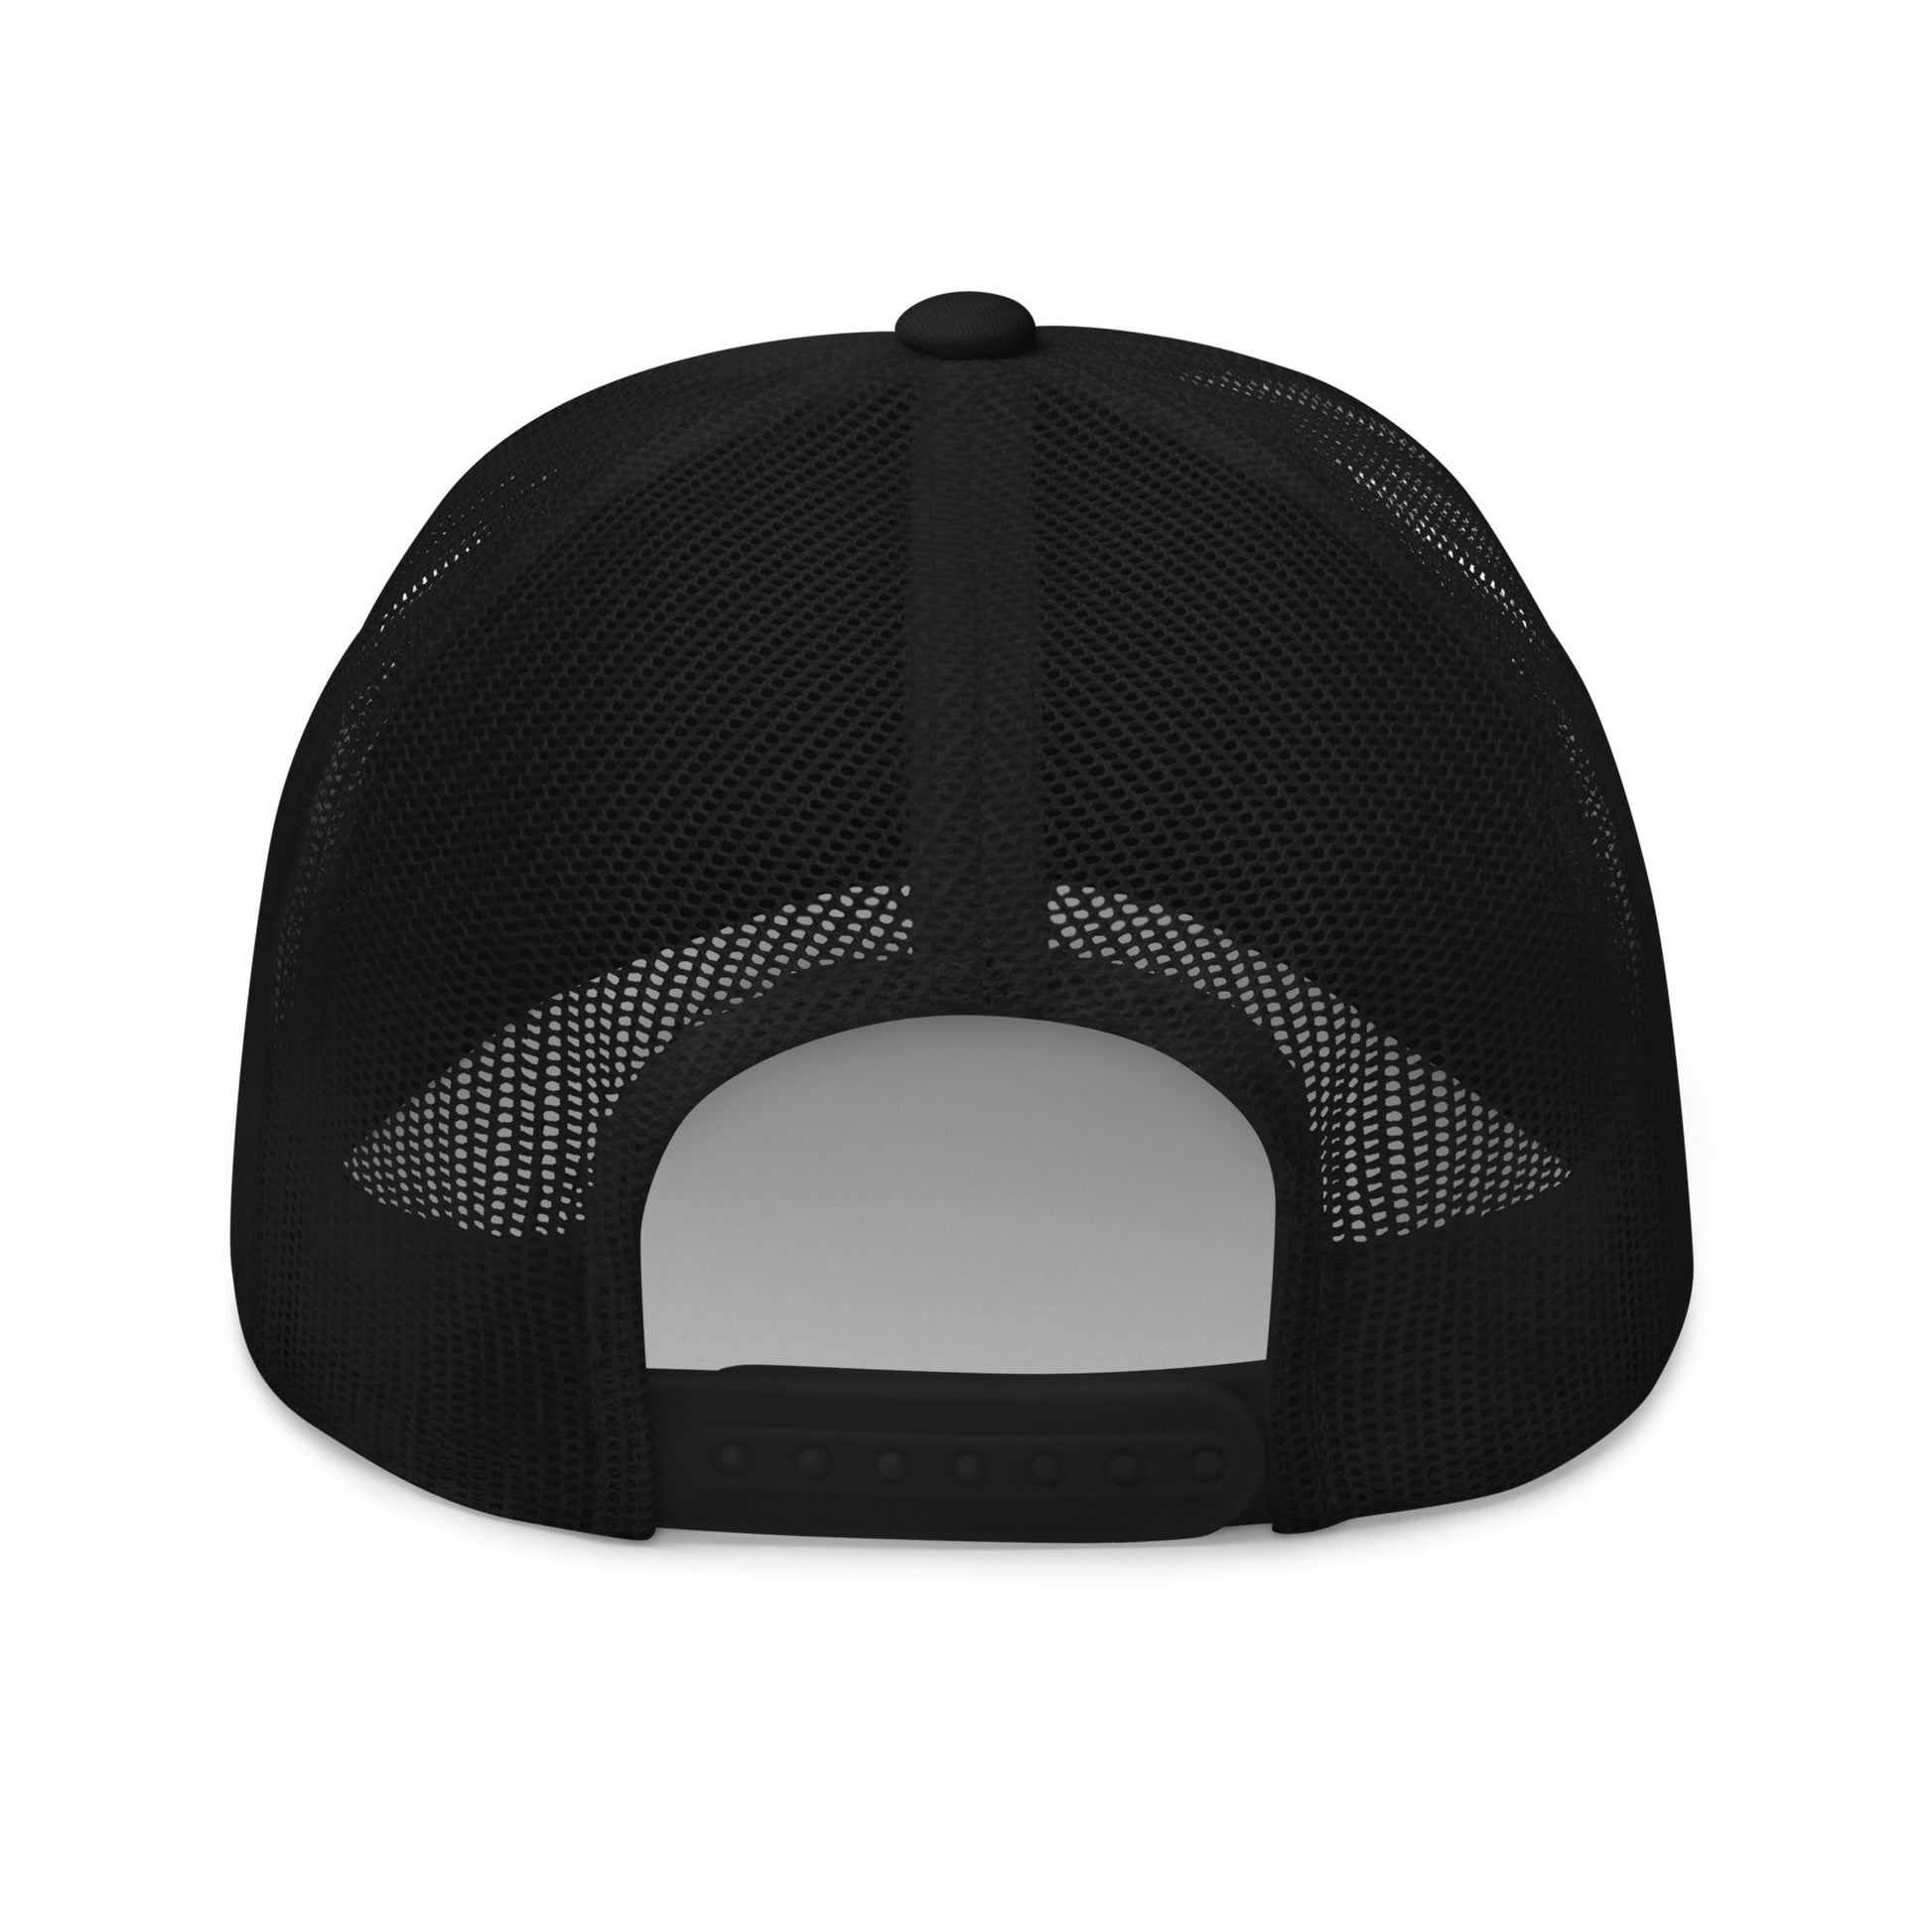 Gorra de Camionero con logo Siempre Original bordado. Color Negro. Trasera.